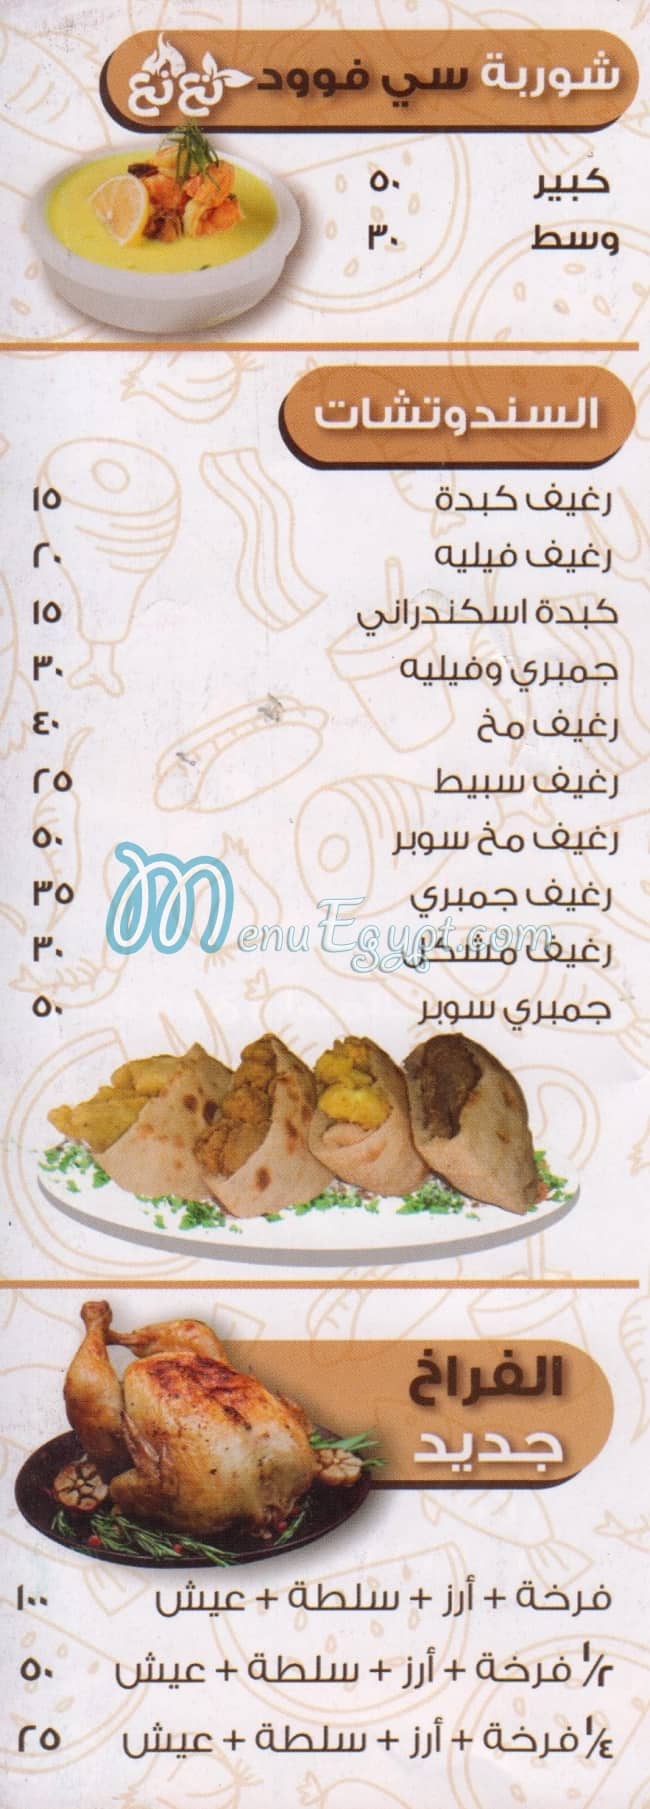 Naa Naa menu Egypt